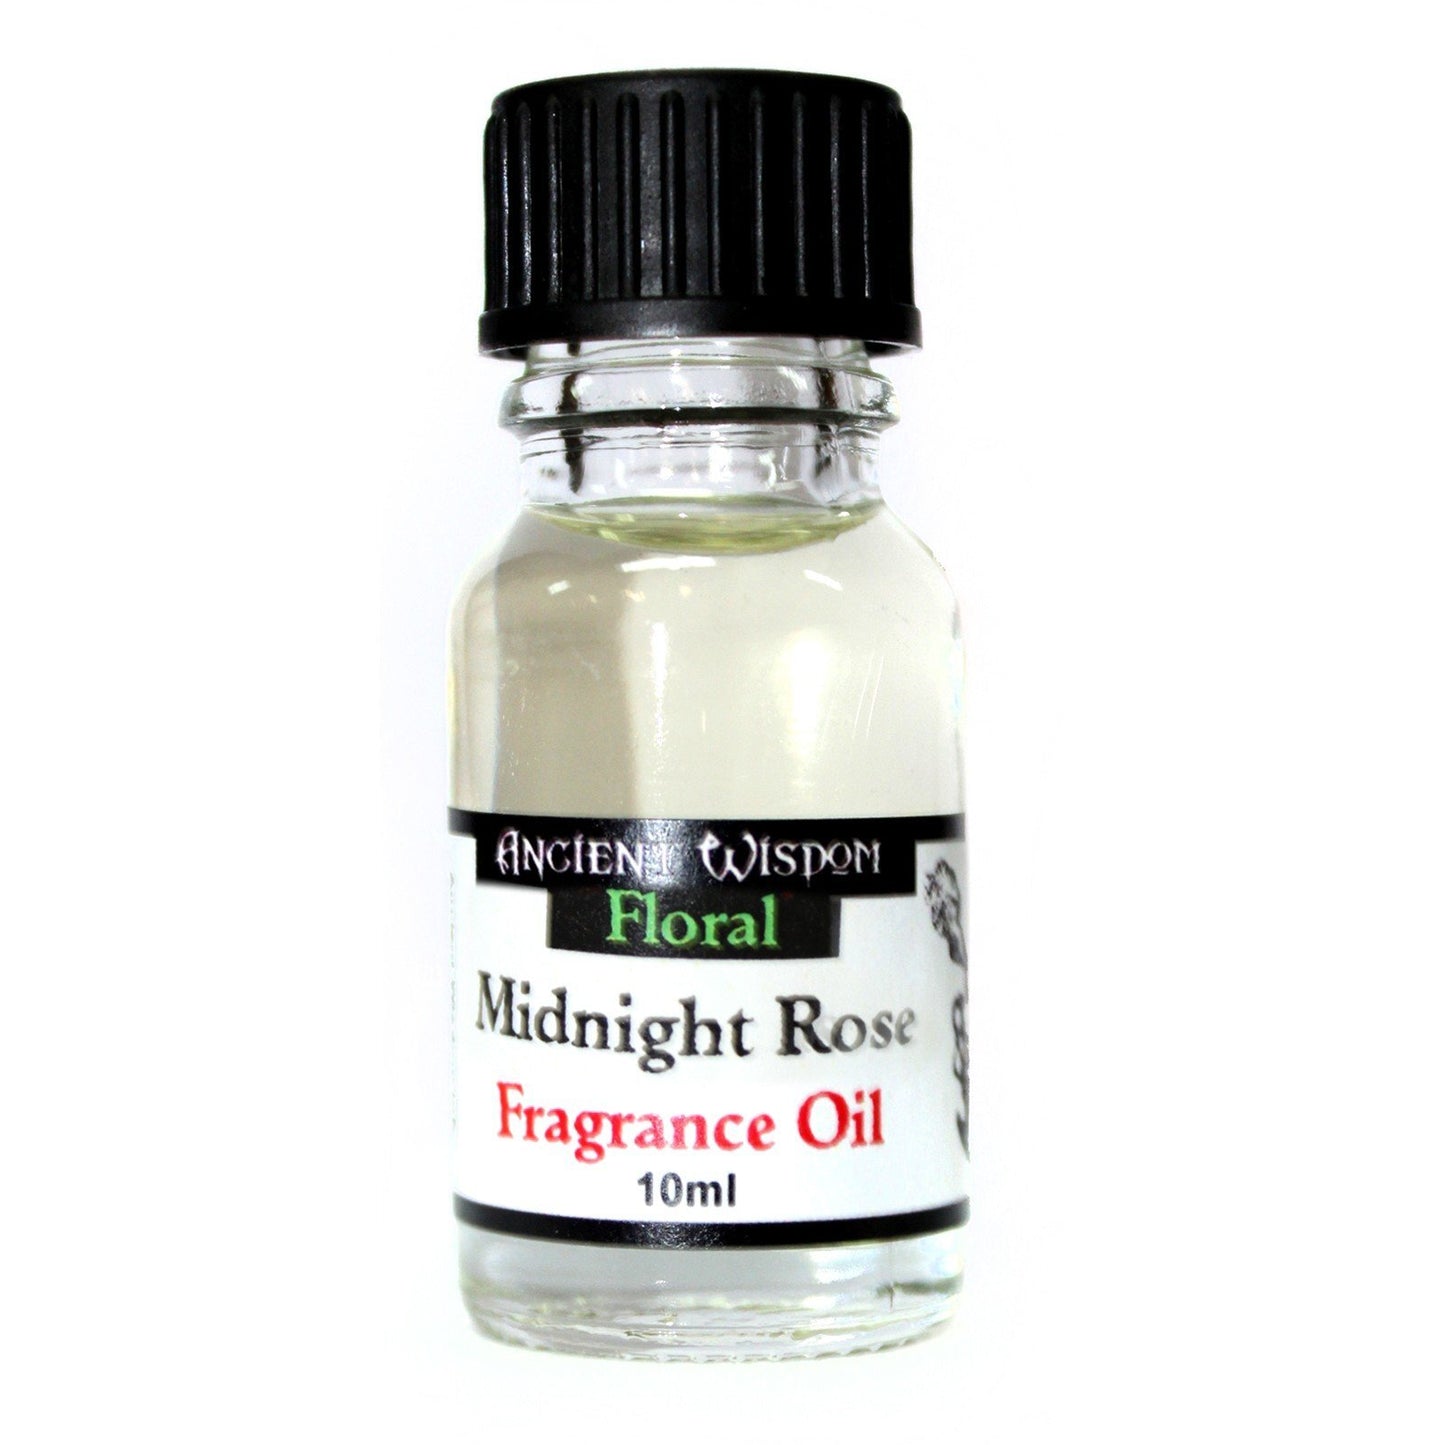 Midnight Rose Fragrance Oil